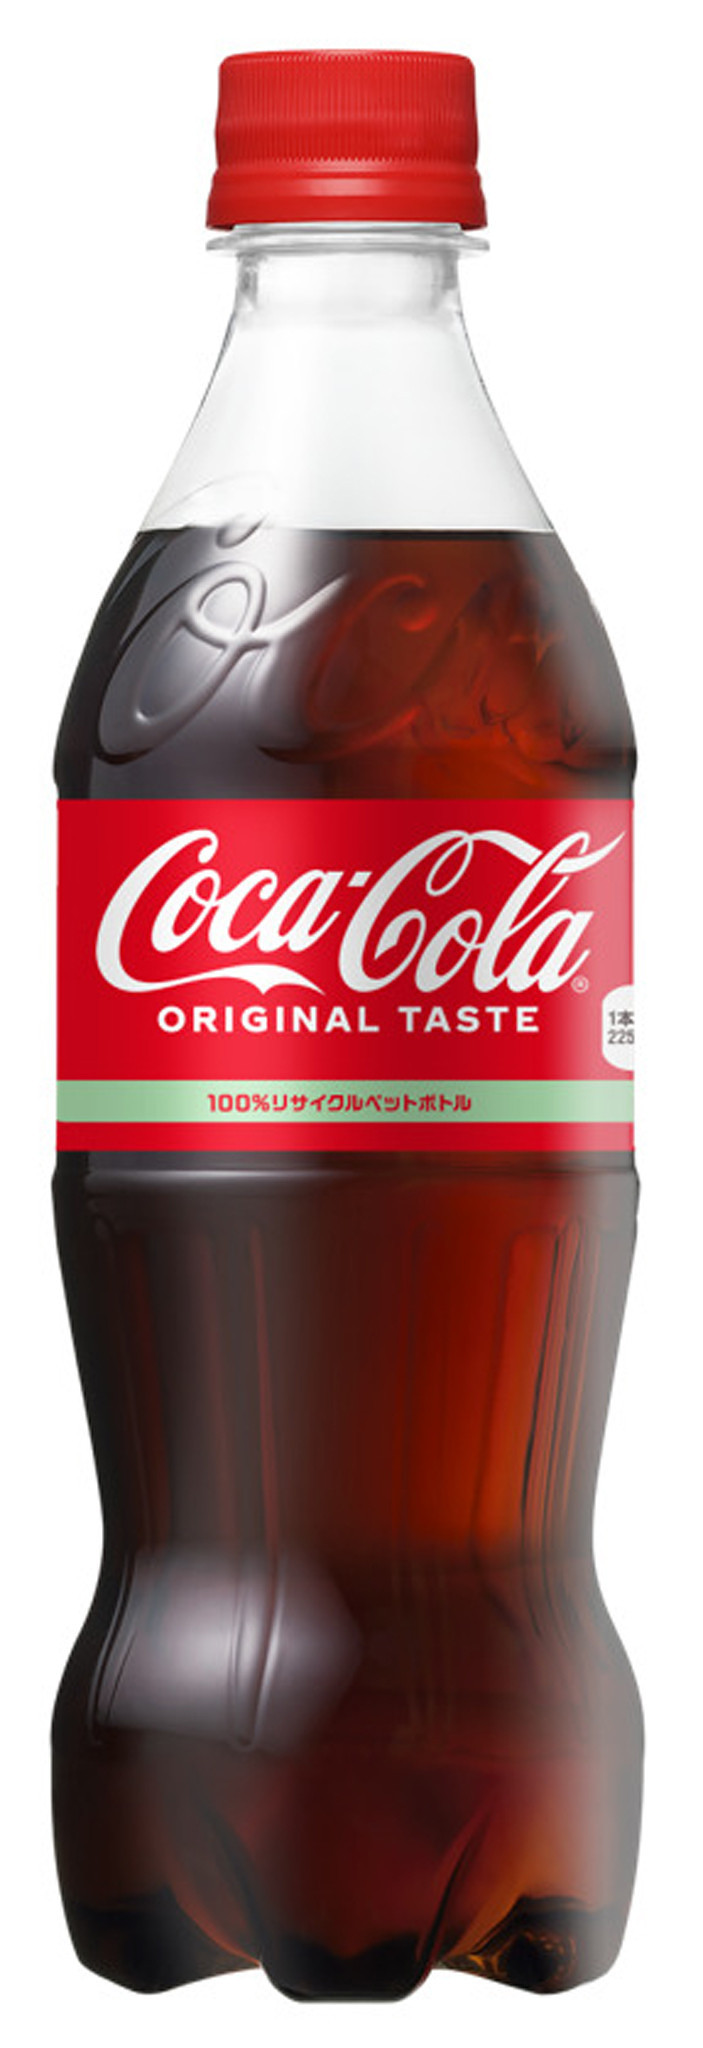 コカ・コーラ、141品値上げ(時事通信) - Yahoo!ファイナンス